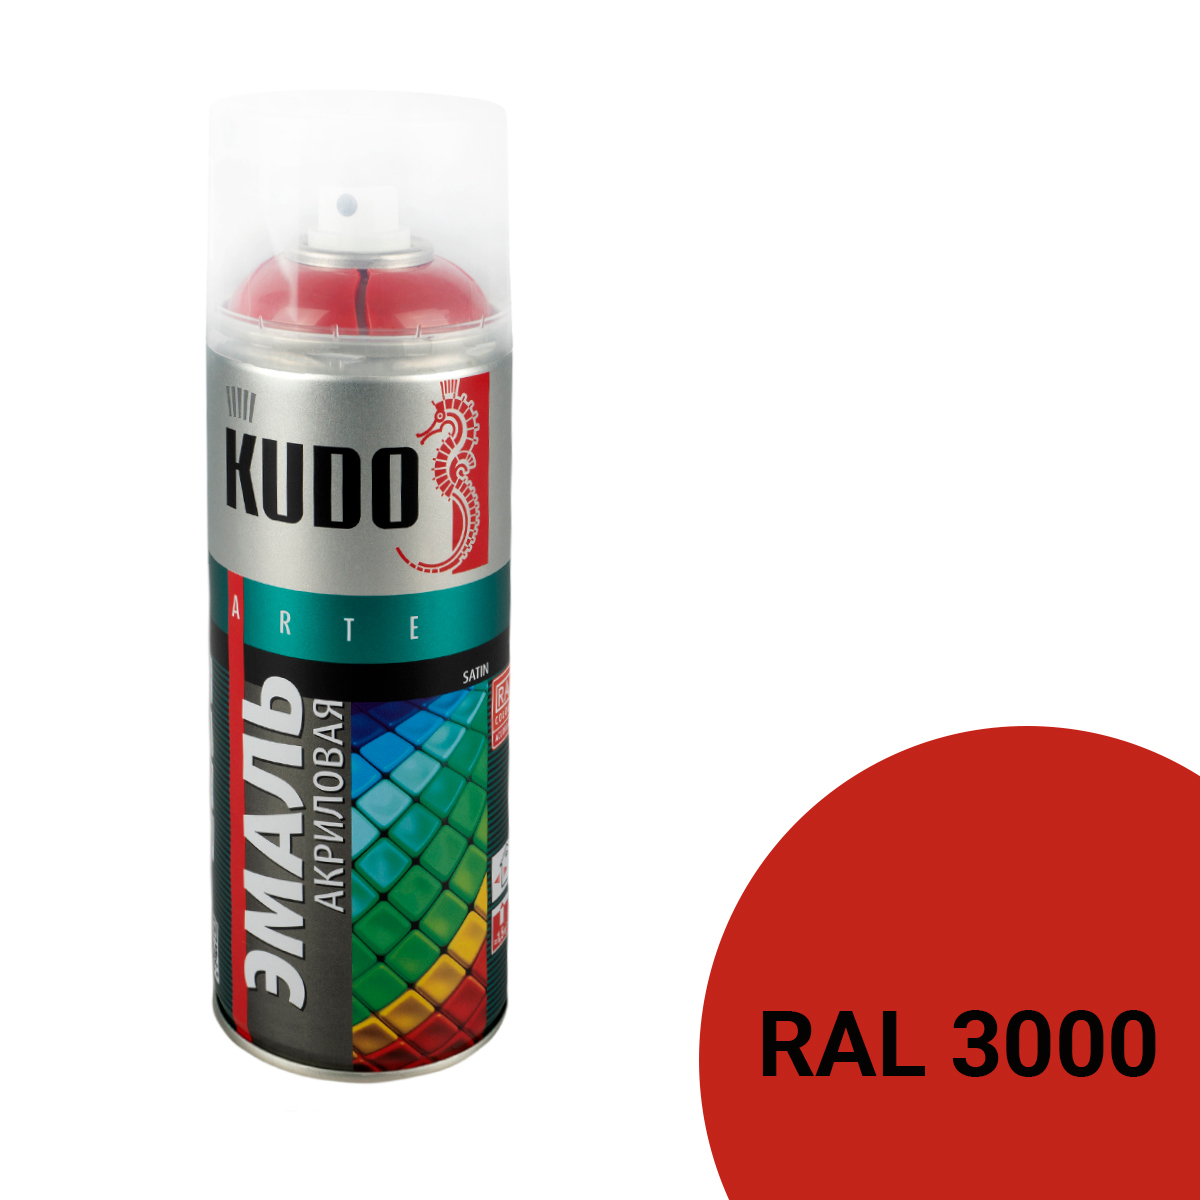 Аэрозольная акриловая краска Kudo Satin KU-0A3000, 520 мл, огненно-красная 